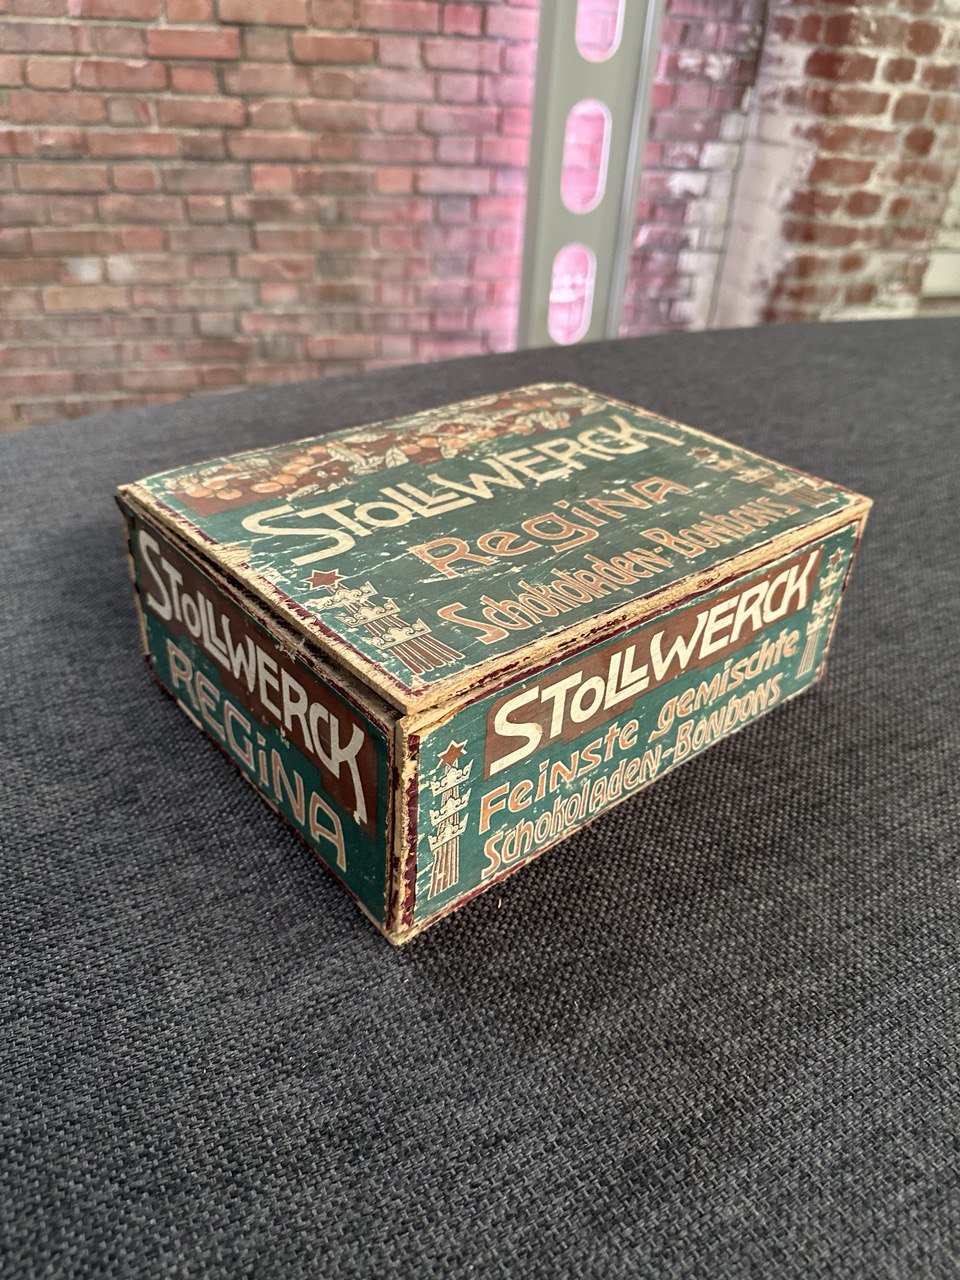 Jugendstil Kiste für Schokoladen Bonbons von Stollwerck - aus Bares für Rares 2024 - Esther-Ollick.shop